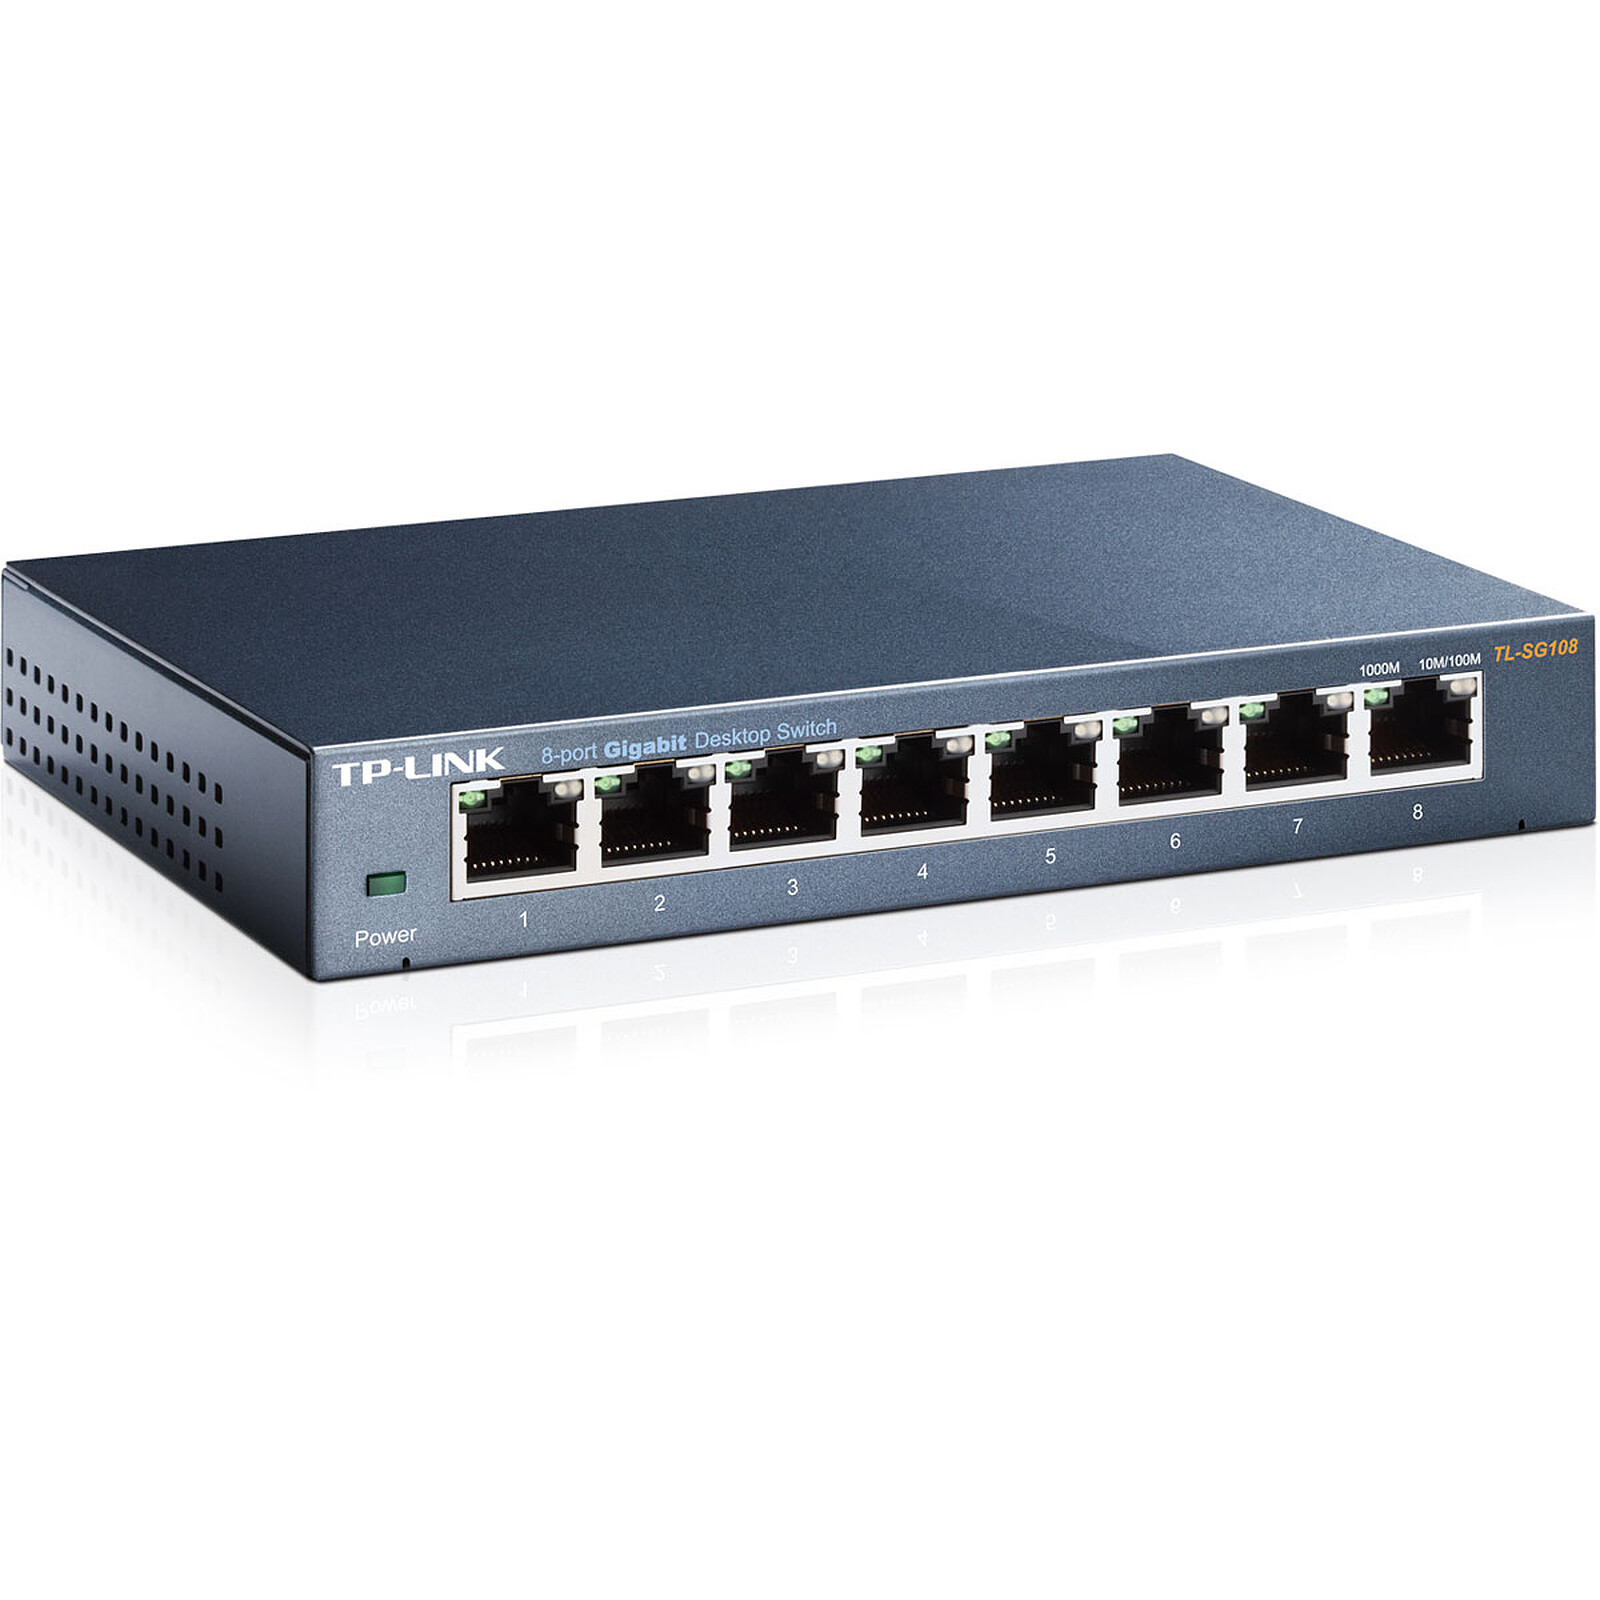 TP-Link TL-SG108 Switch Ethernet 8 ports Gigabit Hub RJ45 metallique  10/100/1000 Mbps, IGMP Snooping, switch RJ45 idéal pour étendre le réseau  câblé